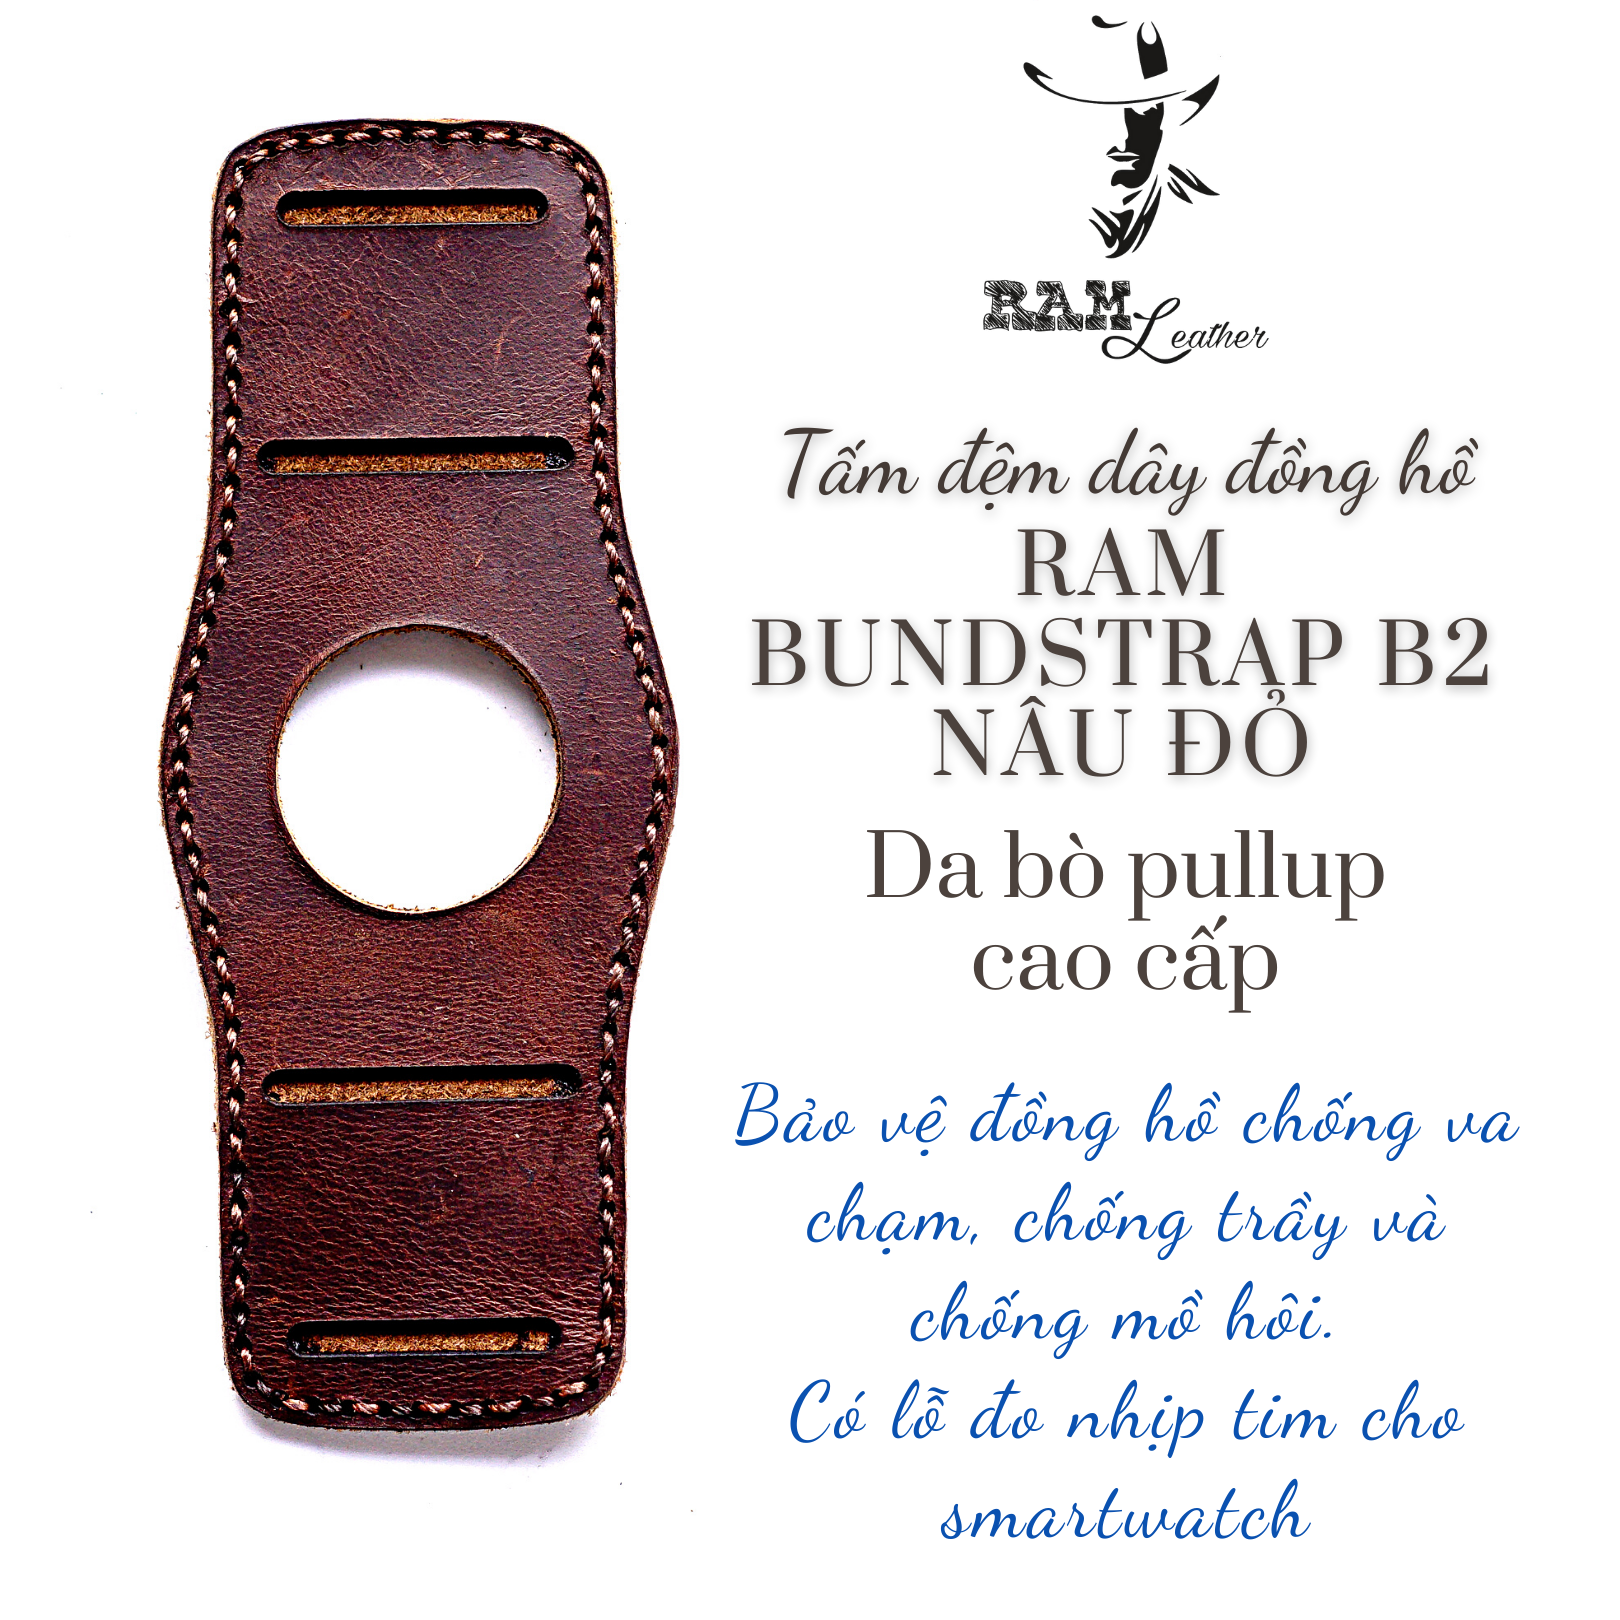 Tấm Bundstrap Da Bò Nâu Đỏ RAM Leather B2